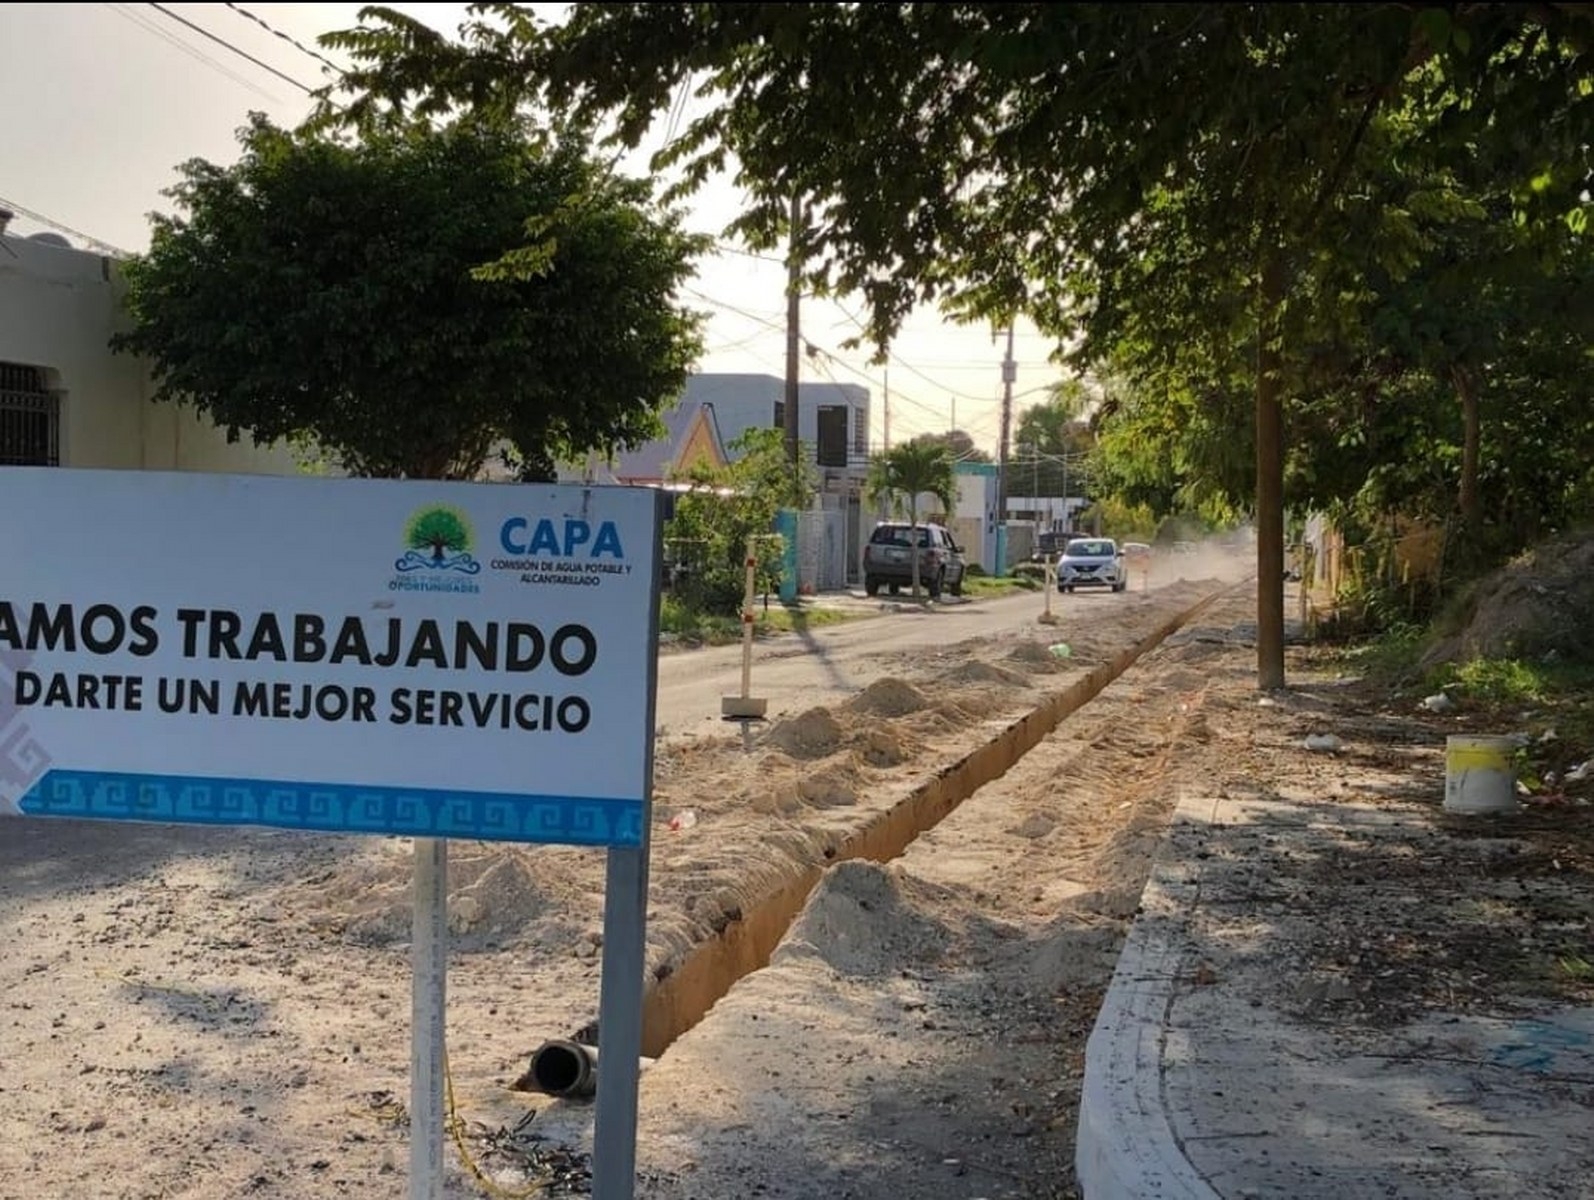 CAPA deberá reparar calles cuando realice obras en Chetumal: Regidor